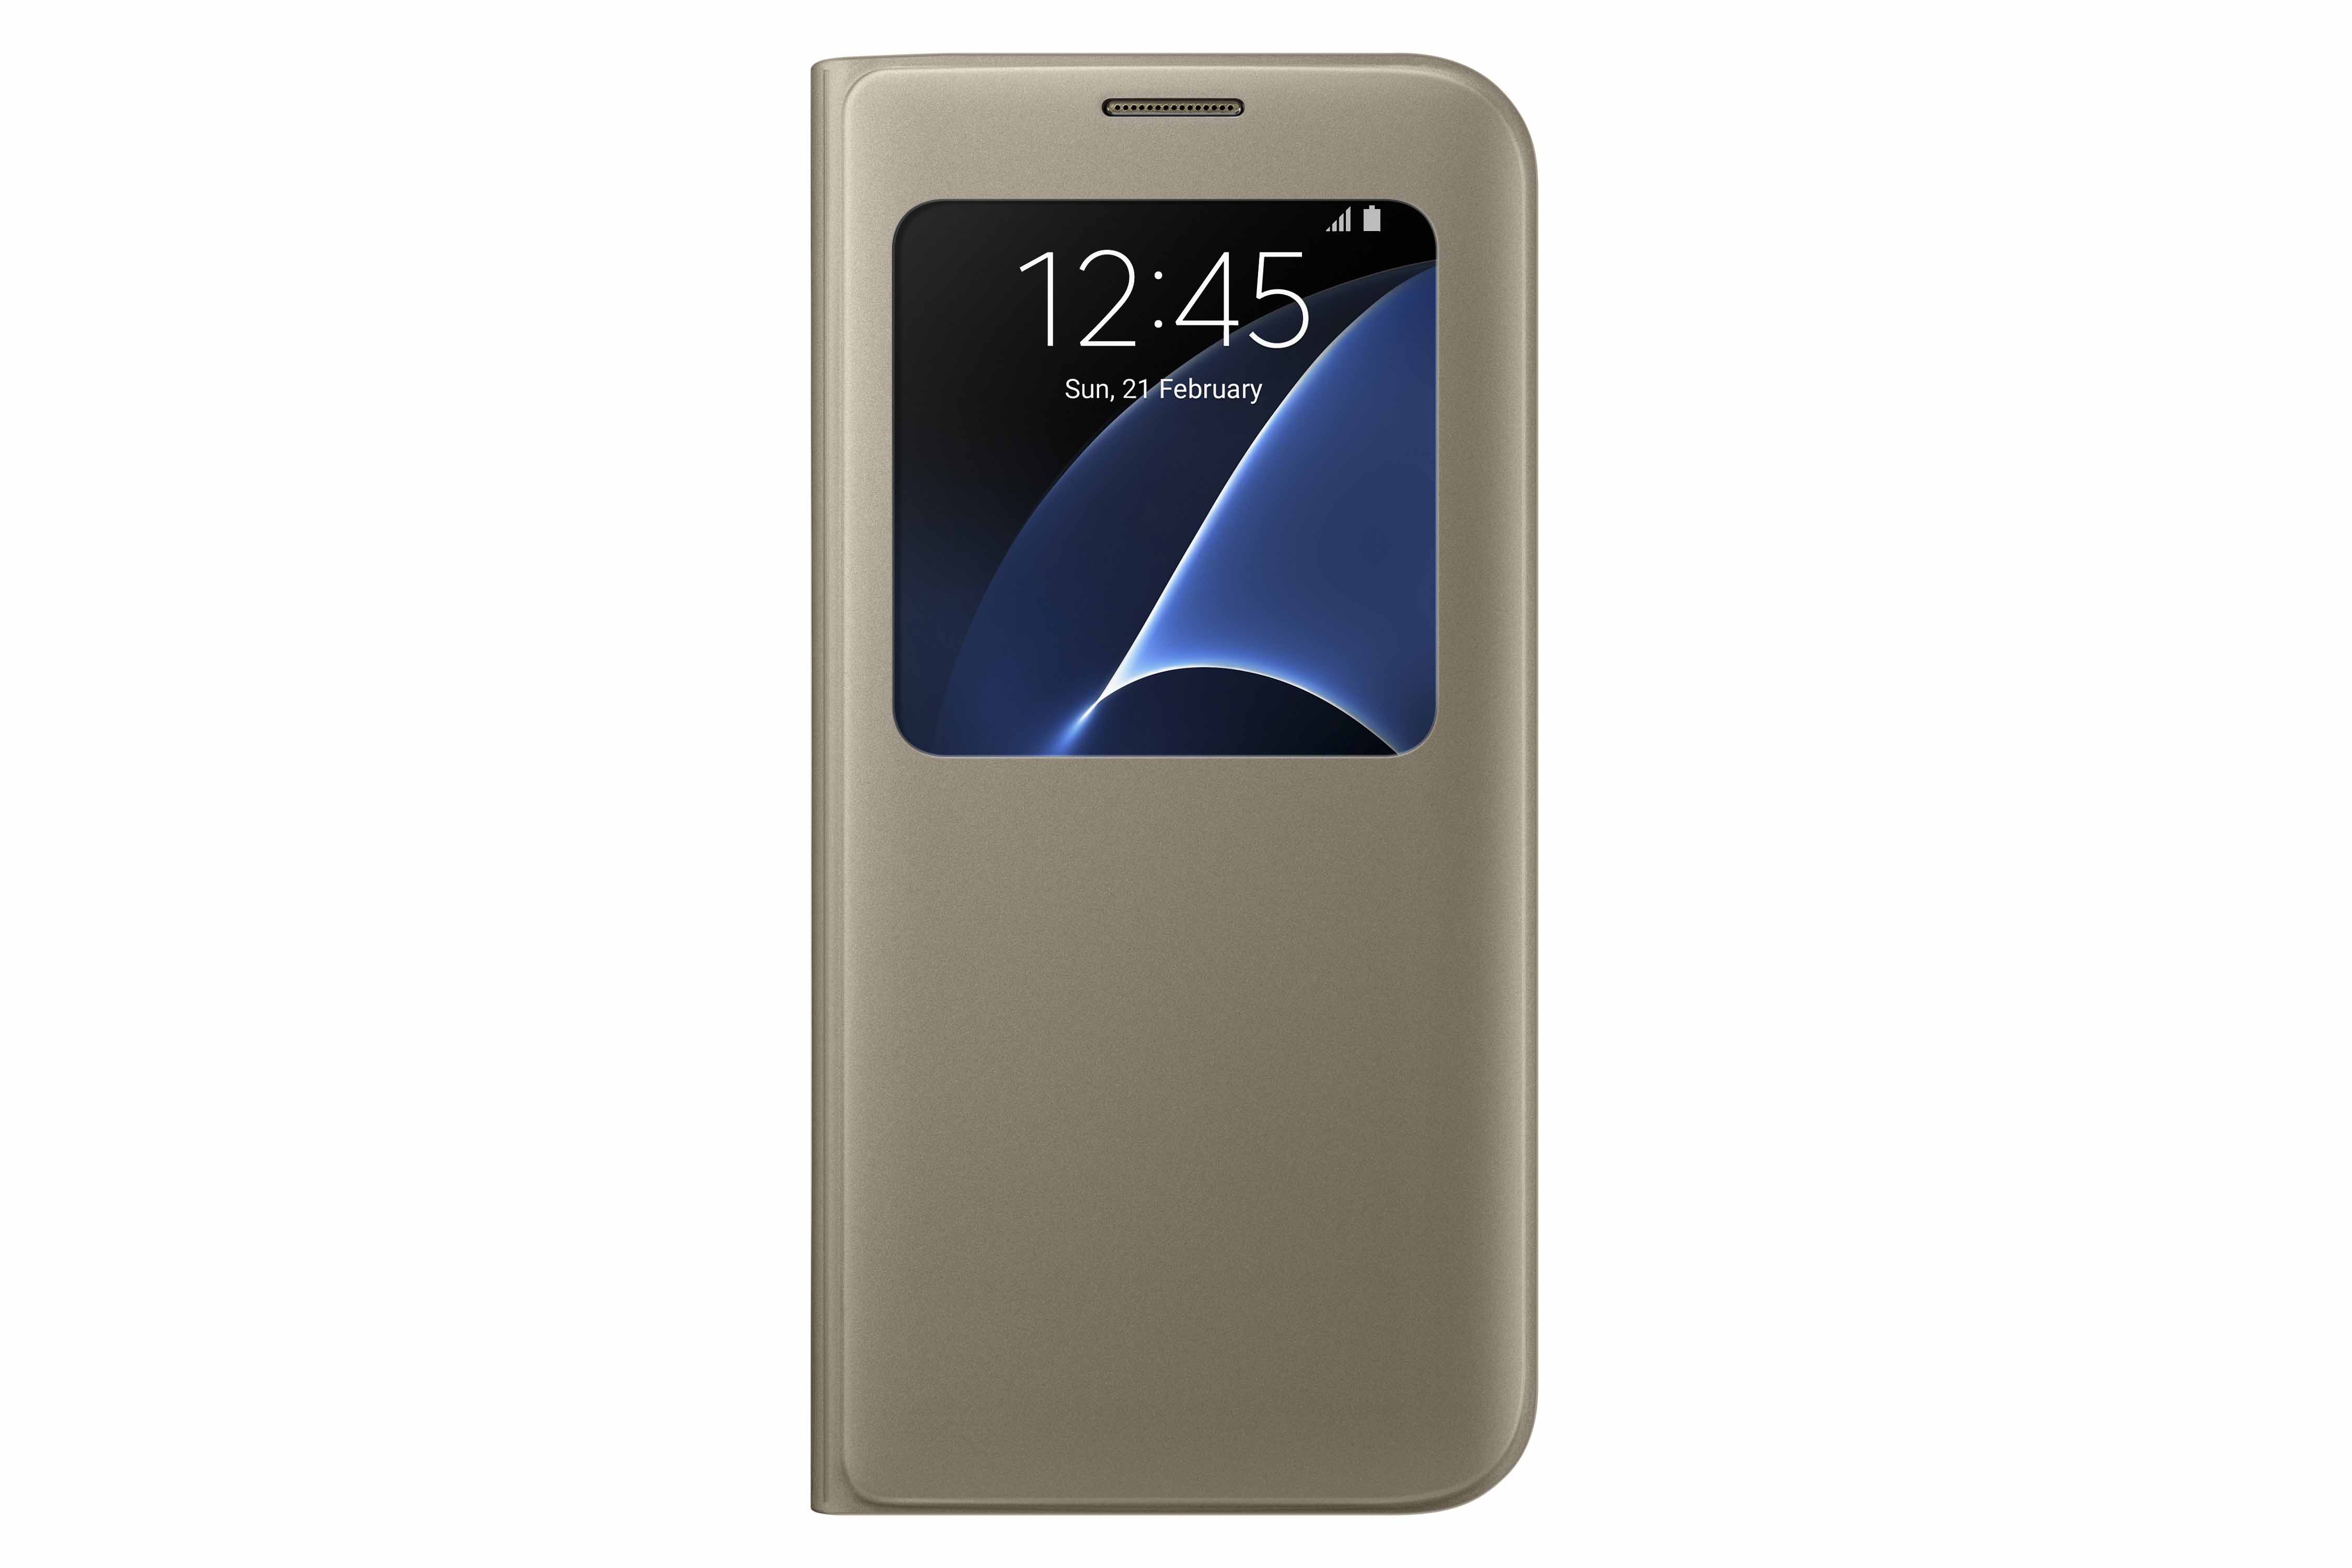 Image of originele S View Cover voor de Samsung Galaxy S7 Edge - Goud